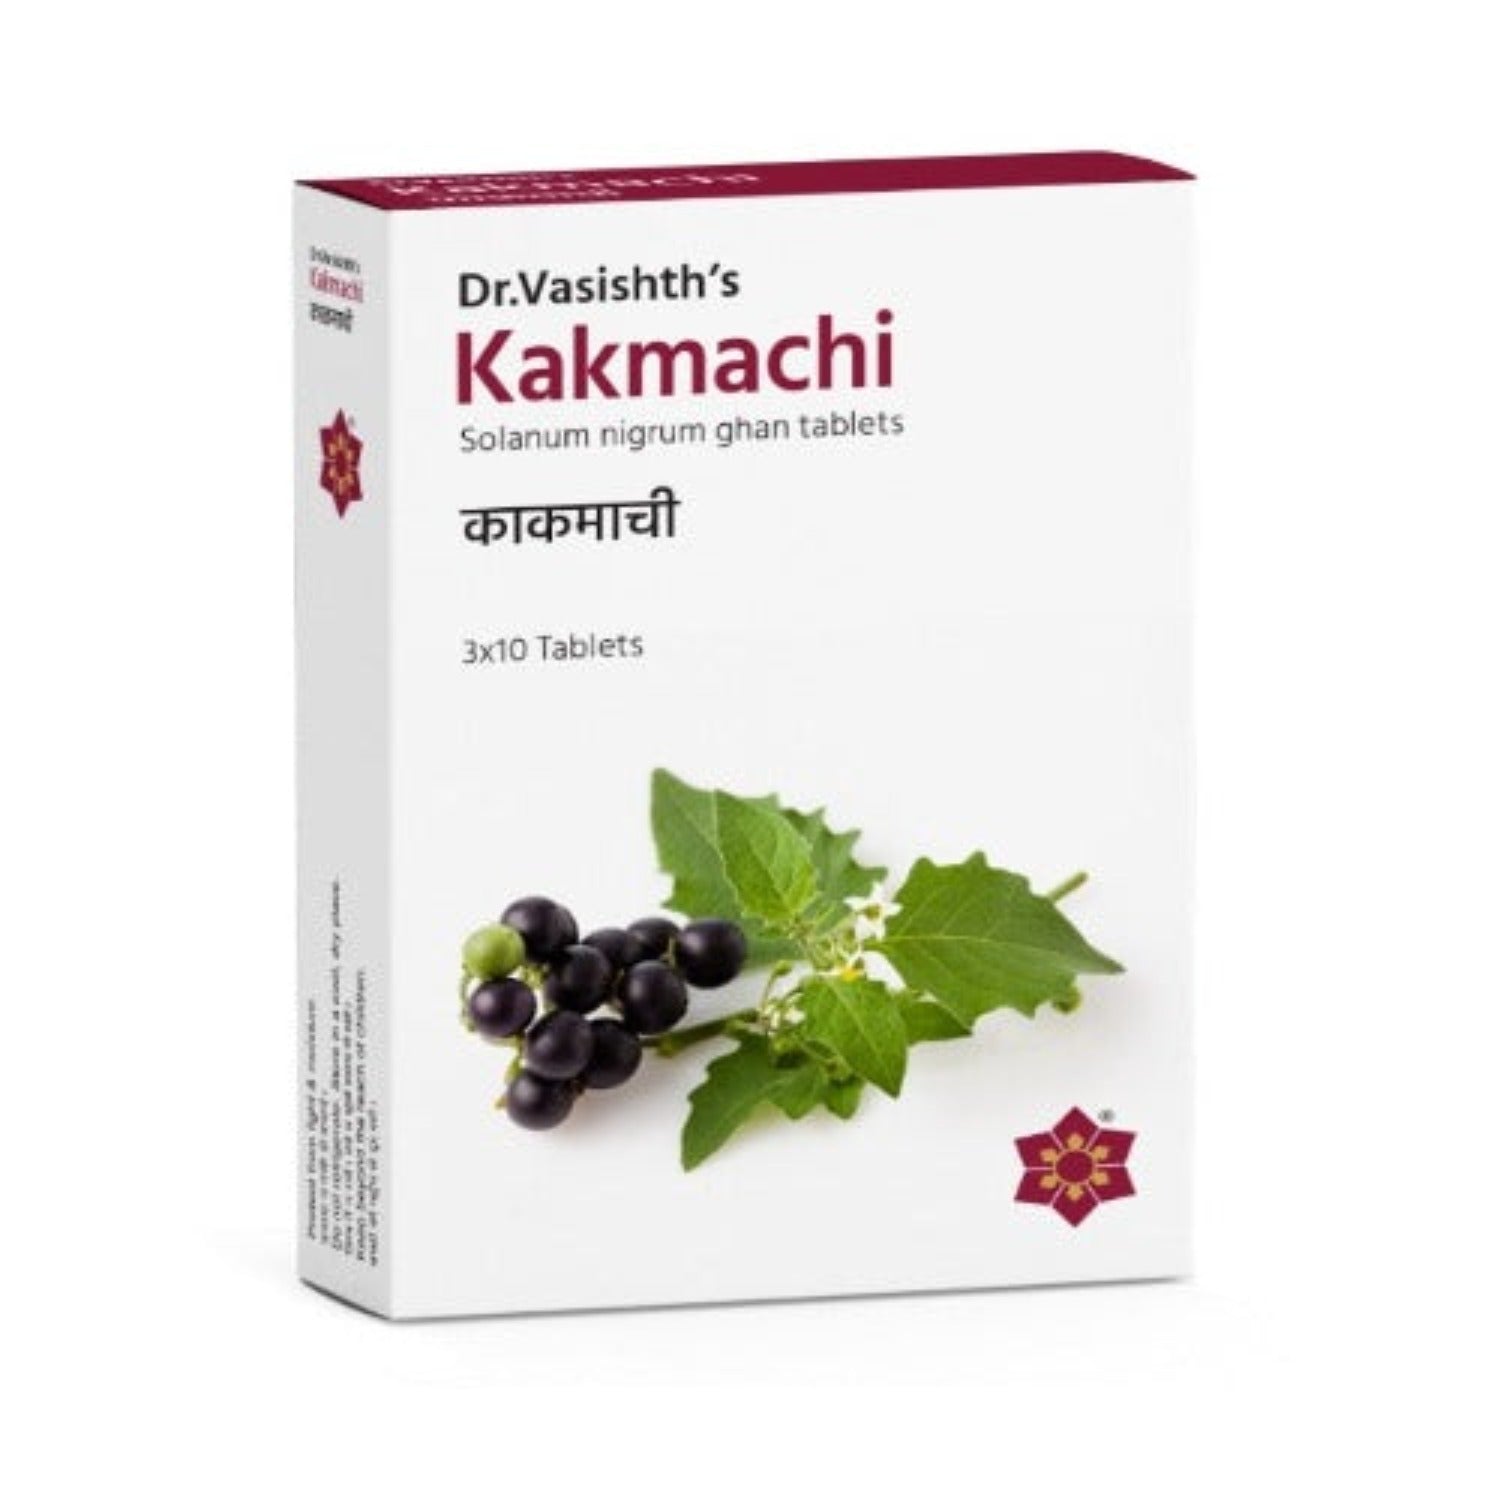 Dr.Vasishth's Ayurvedic Kakmachi 3 X 10 Tablets